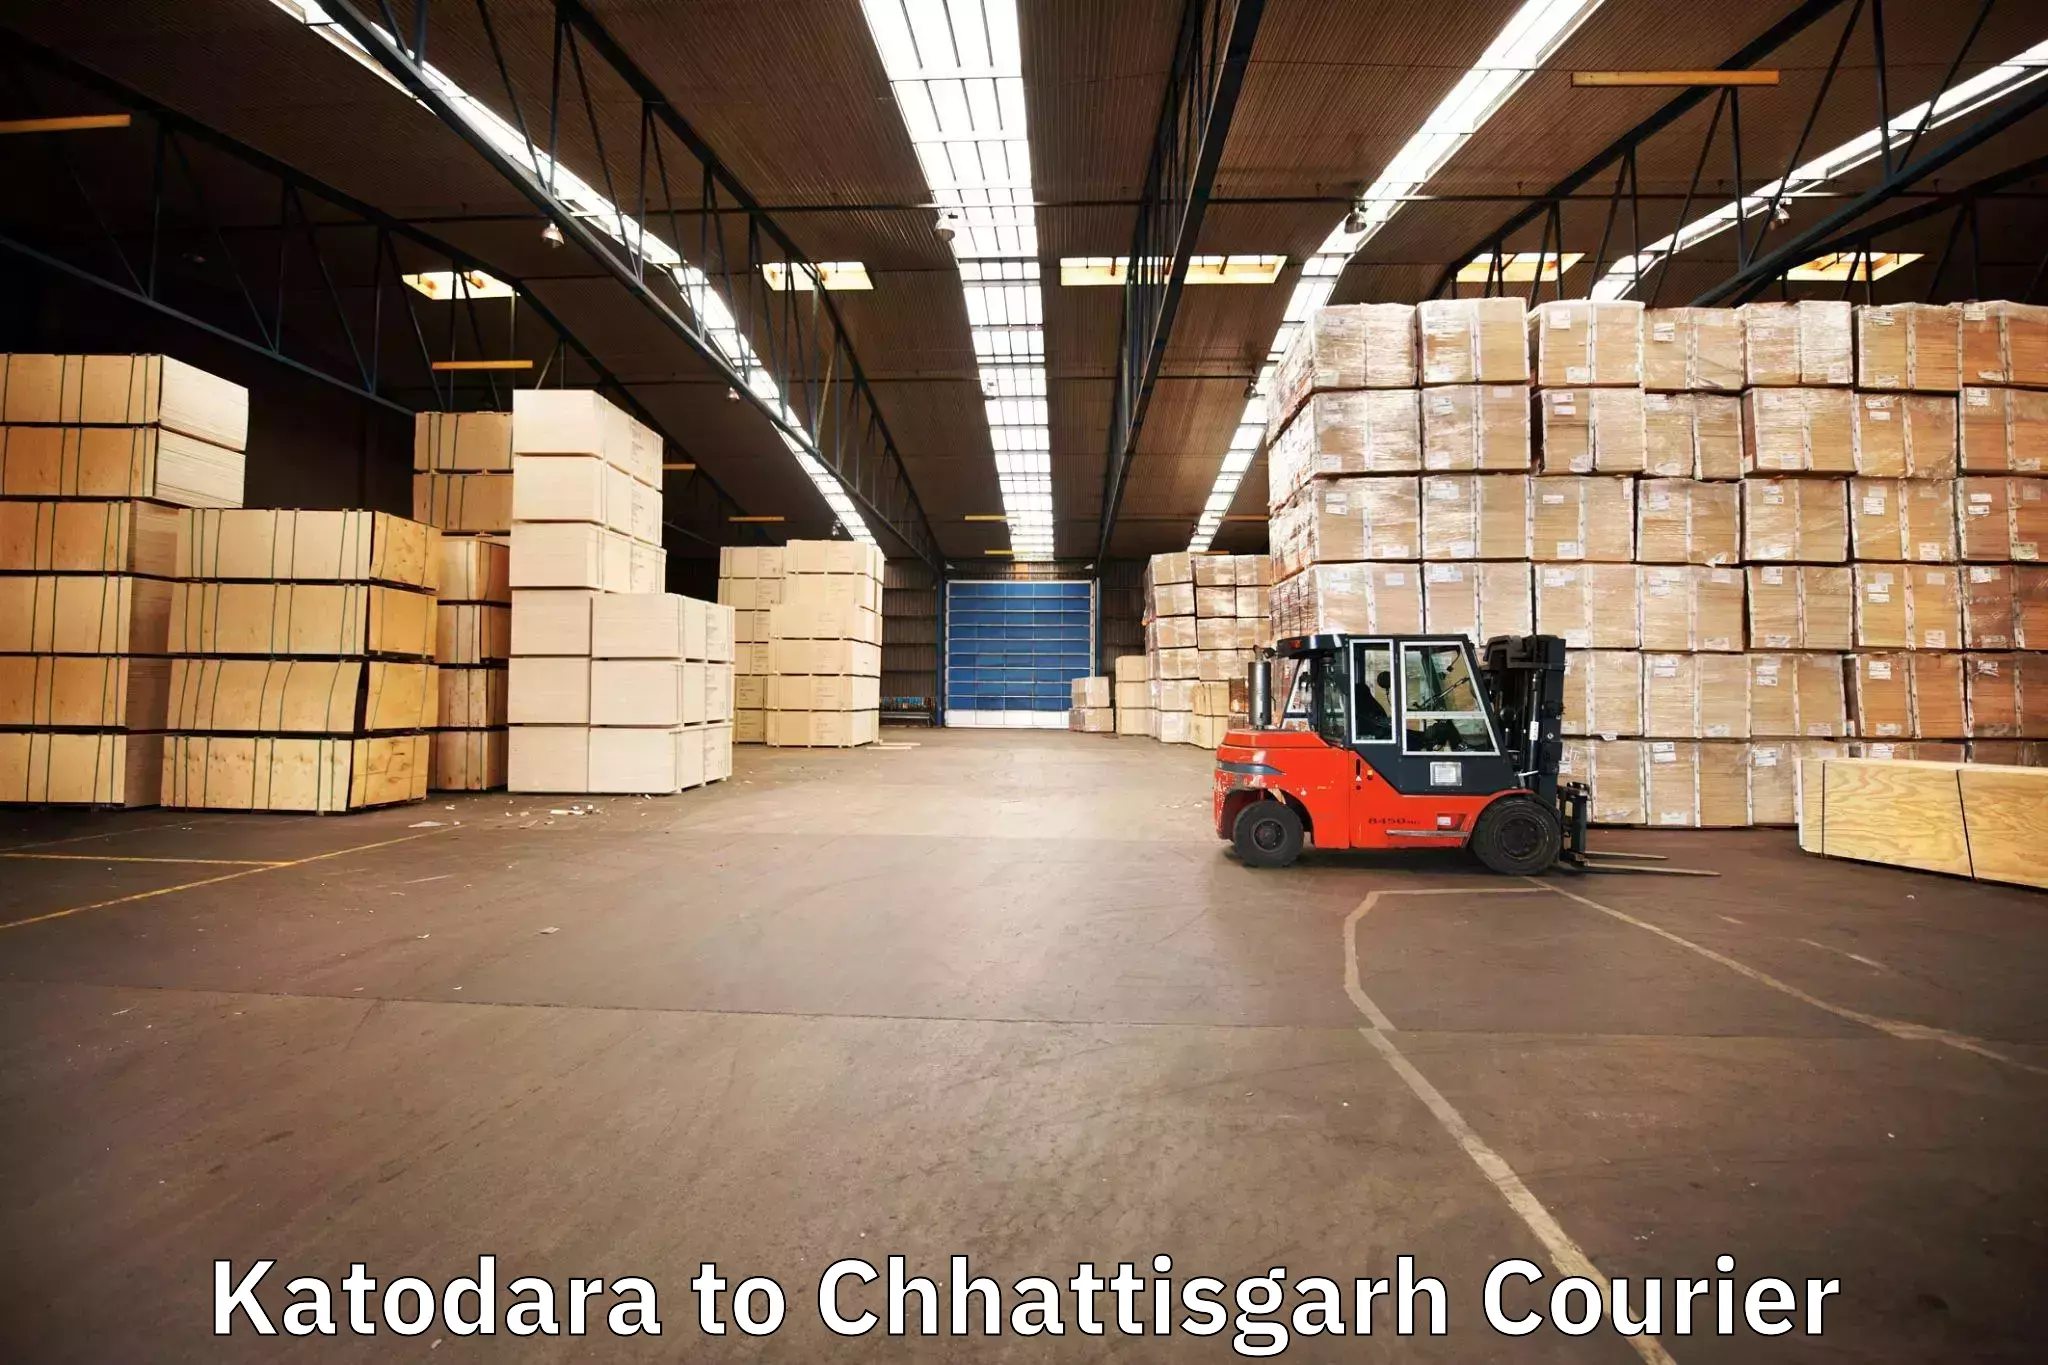 Efficient household movers Katodara to Chhattisgarh